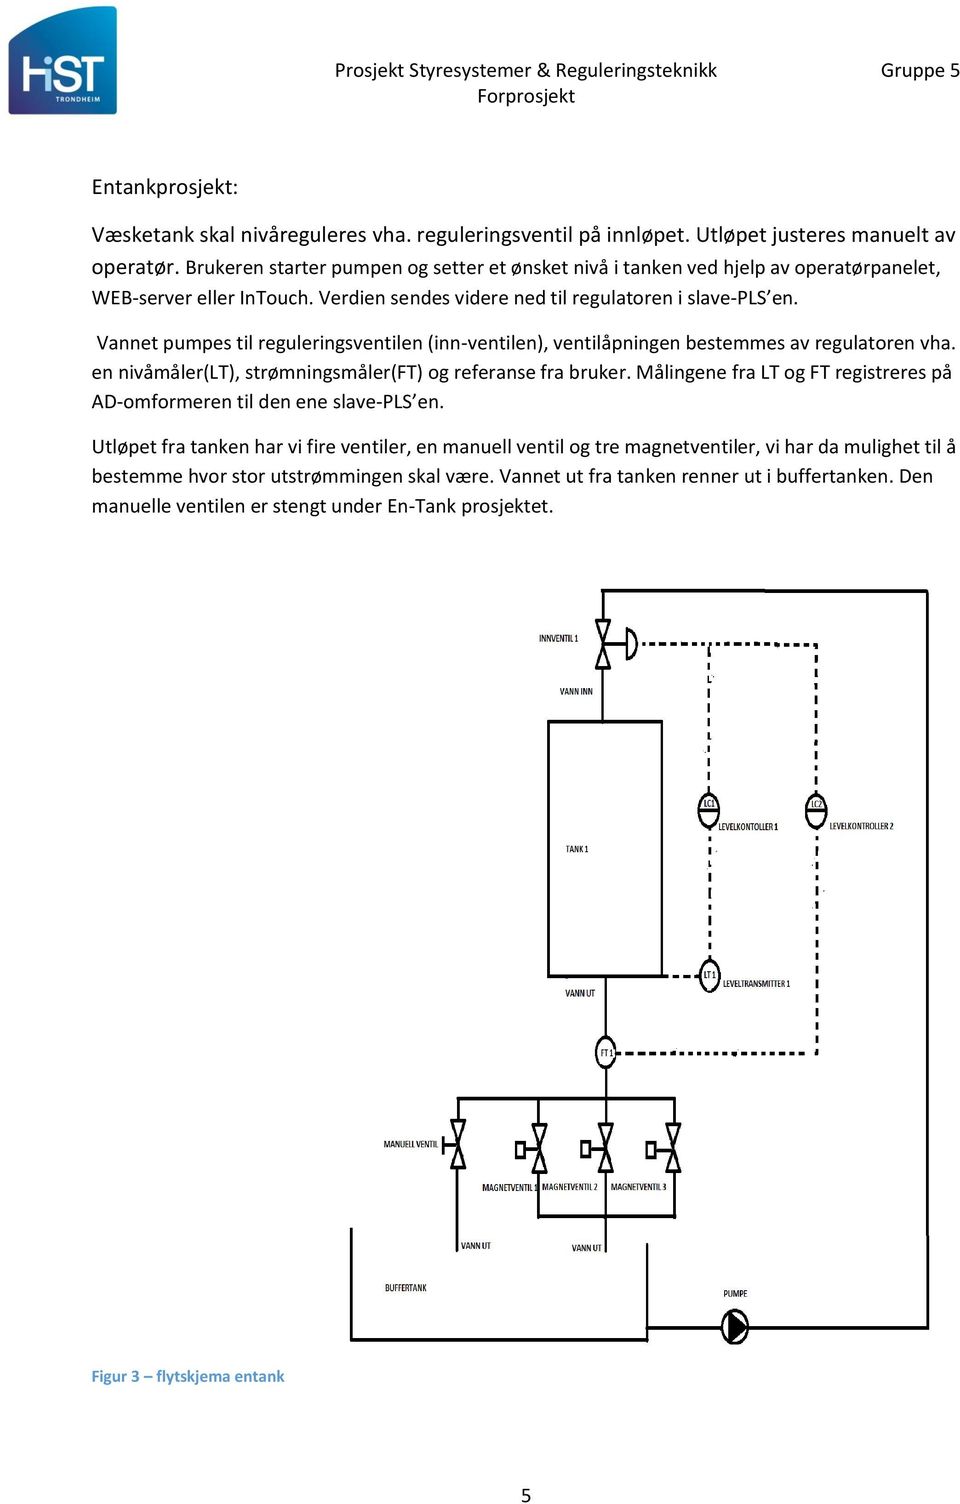 Vannet pumpes til reguleringsventilen (inn-ventilen), ventilåpningen bestemmes av regulatoren vha. en nivåmåler(lt), strømningsmåler(ft) og referanse fra bruker.